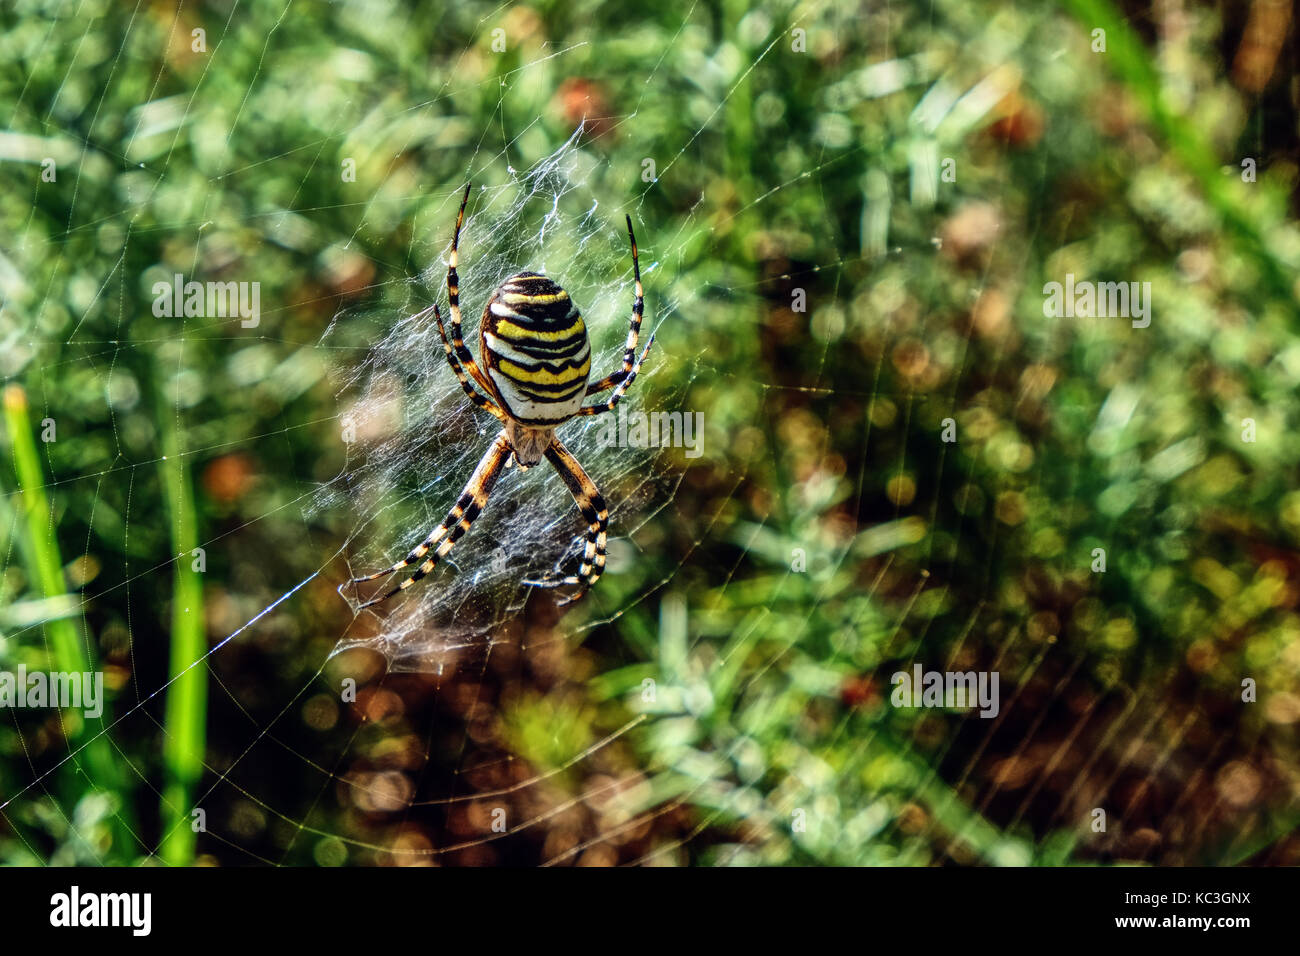 Argiope bruennichi, 'Wasp Spider' Stock Photo